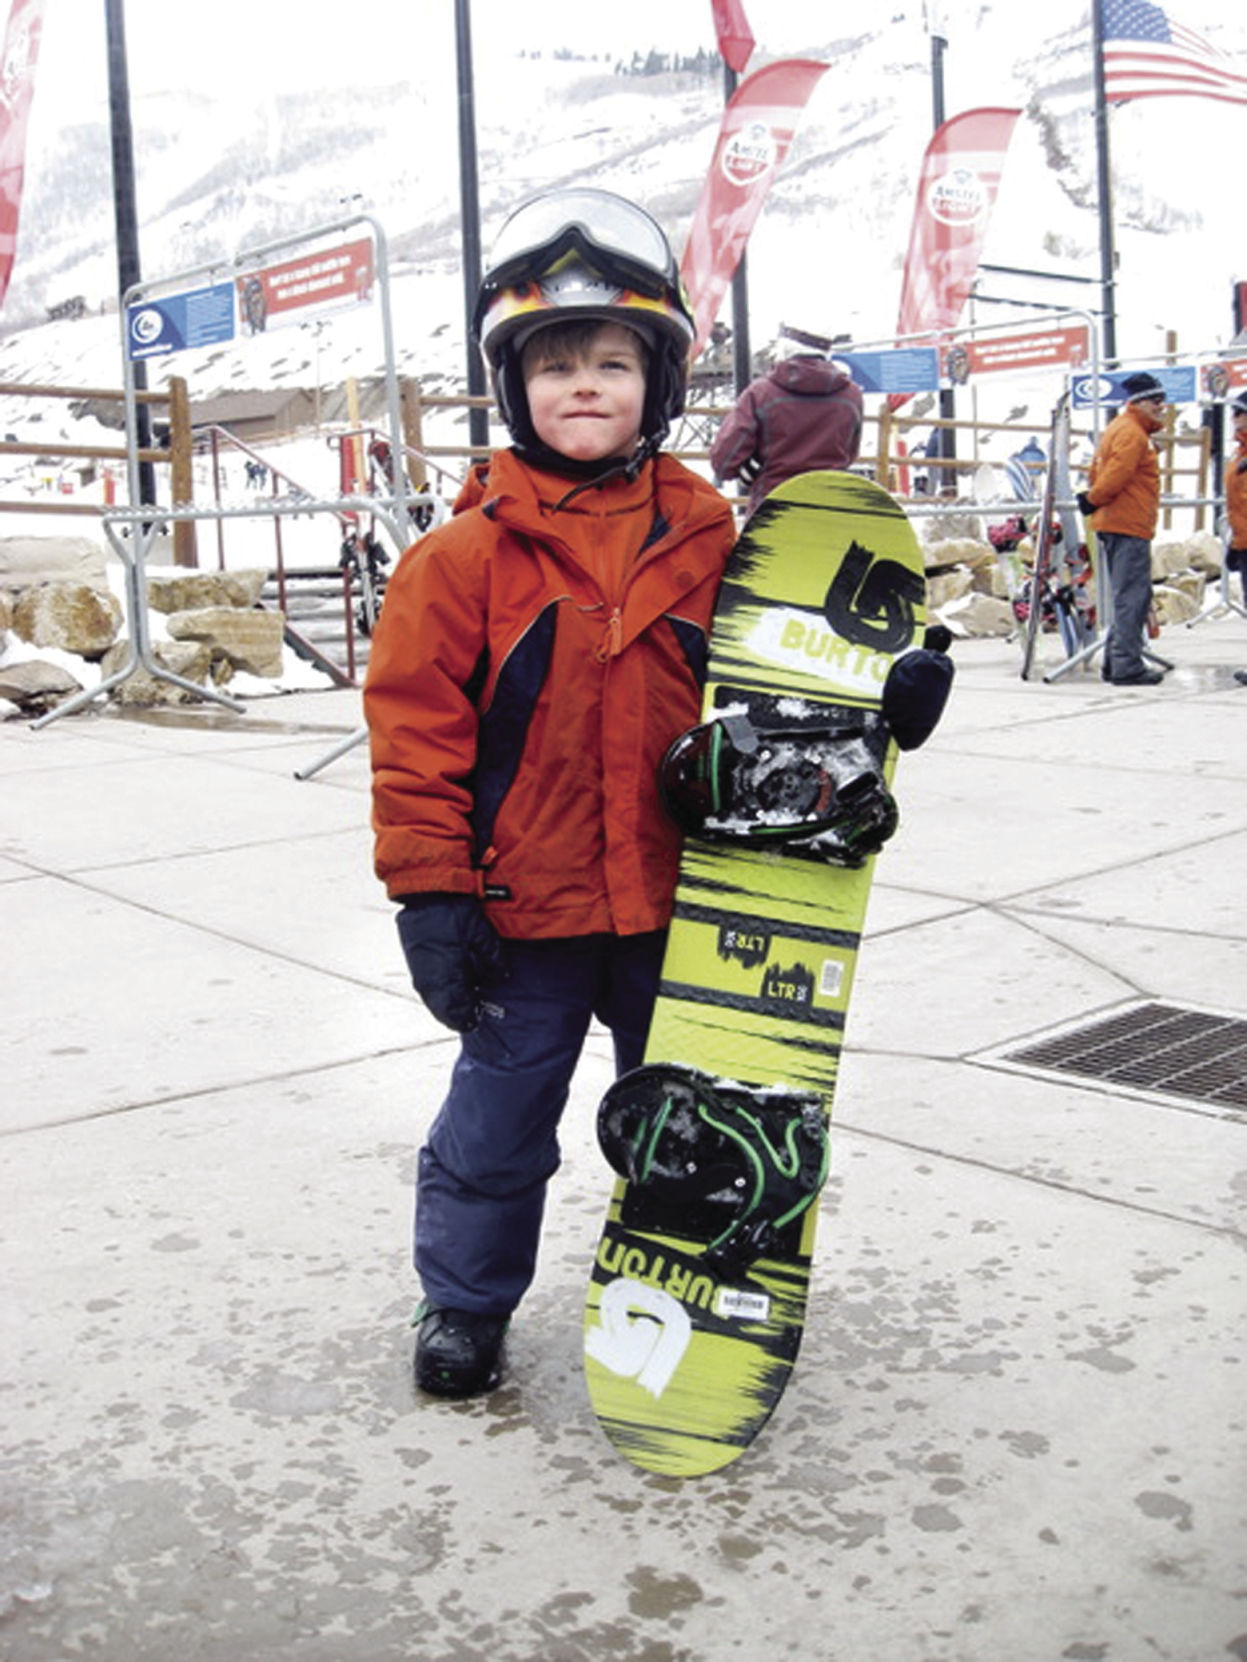 Verwoesting enkel en alleen Boren Series of miracles save life of 15-year-old Medina snowboarder | Community  | hometownsource.com